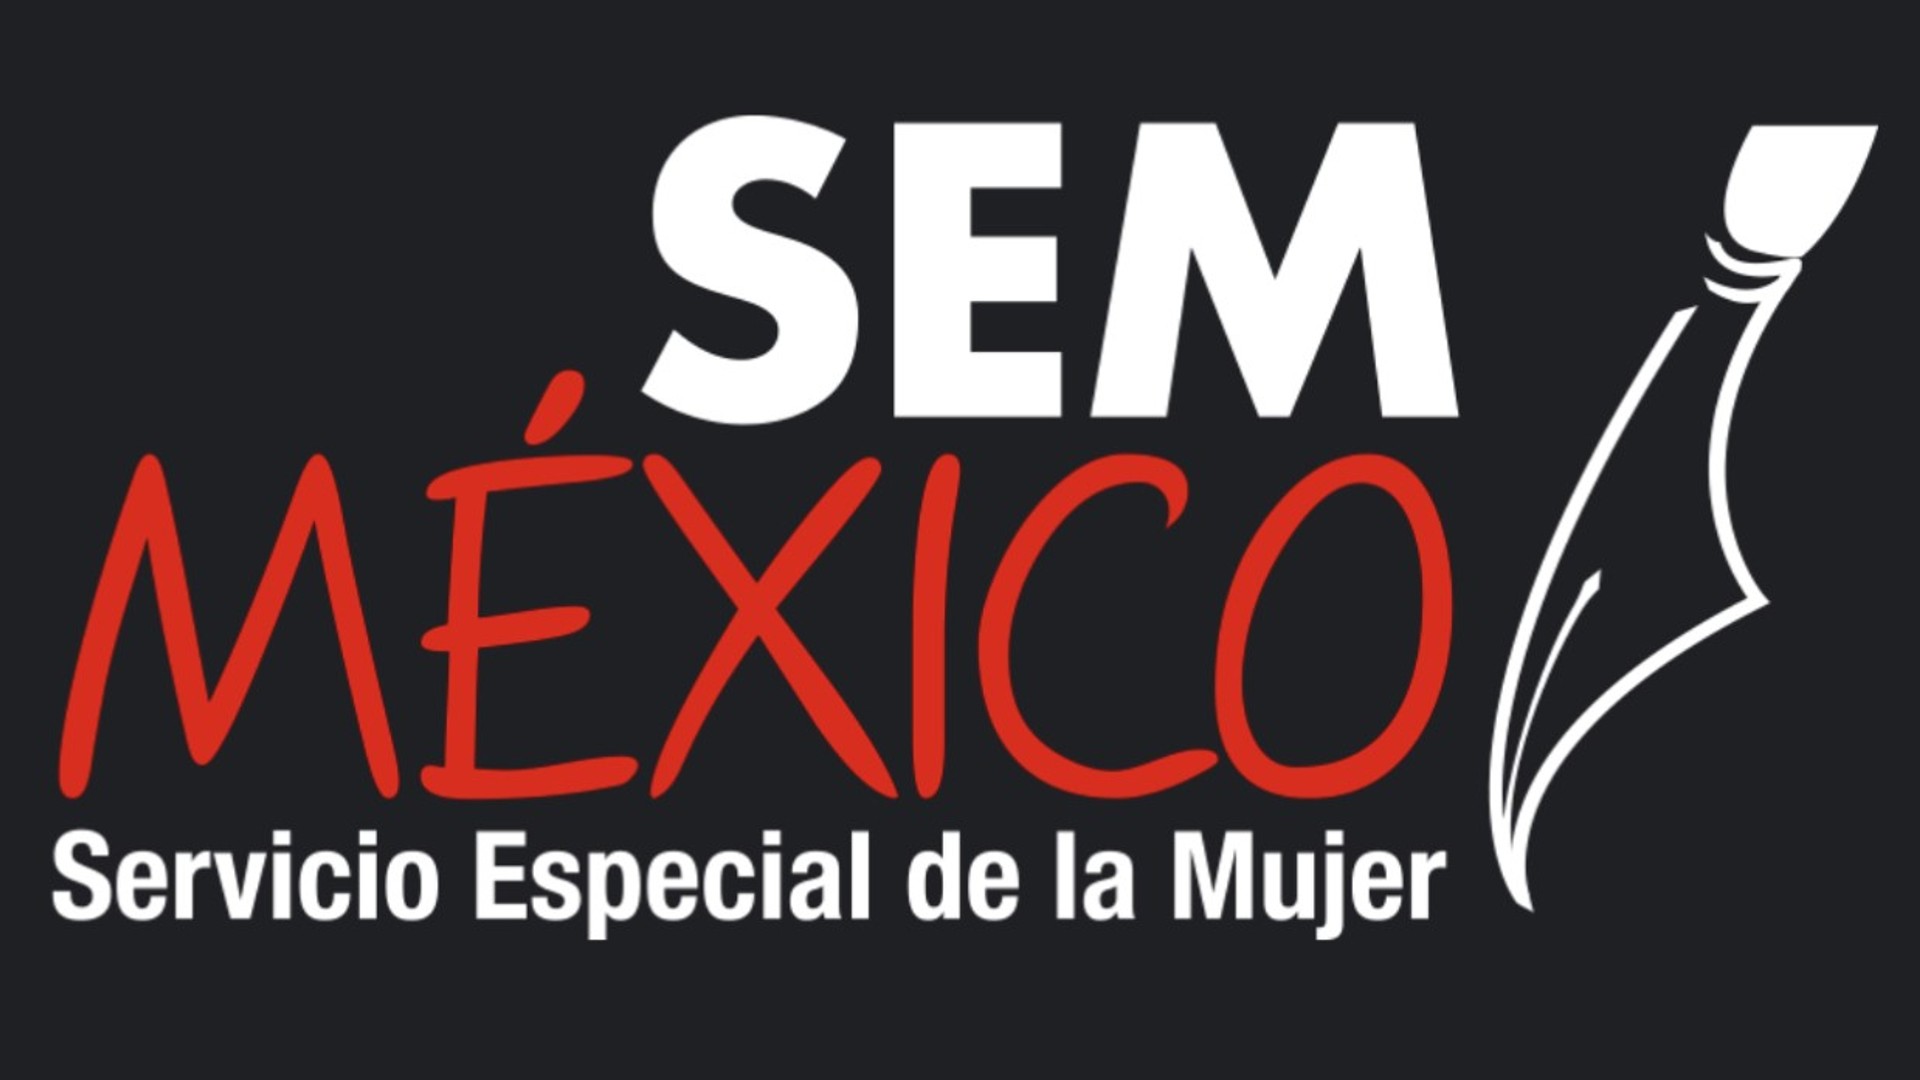 SemMéxico, portal de noticias de corte feminista, recibió amenazas y fue hackeado